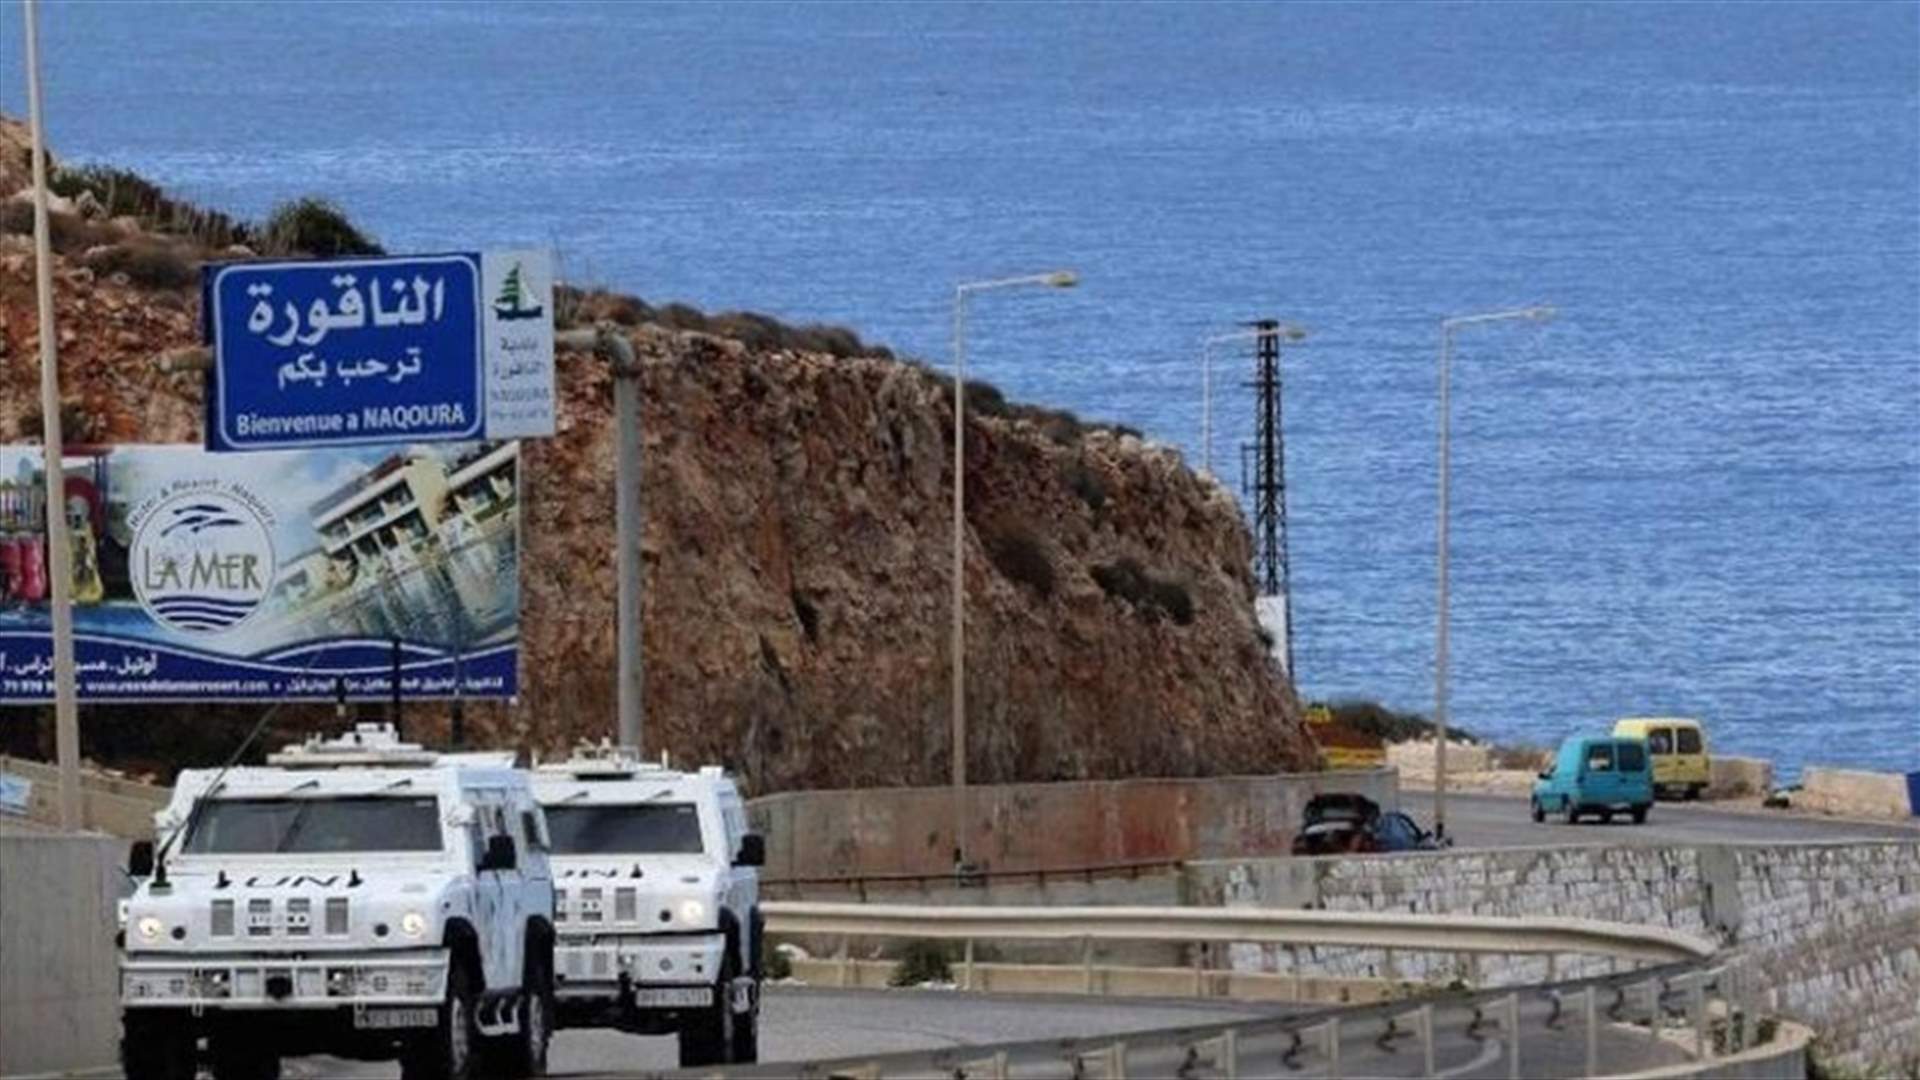 ملف ترسيم الحدود البحرية... لبنان ينتظر إرسال هوكشتين مسودة الإتفاق (الأخبار)